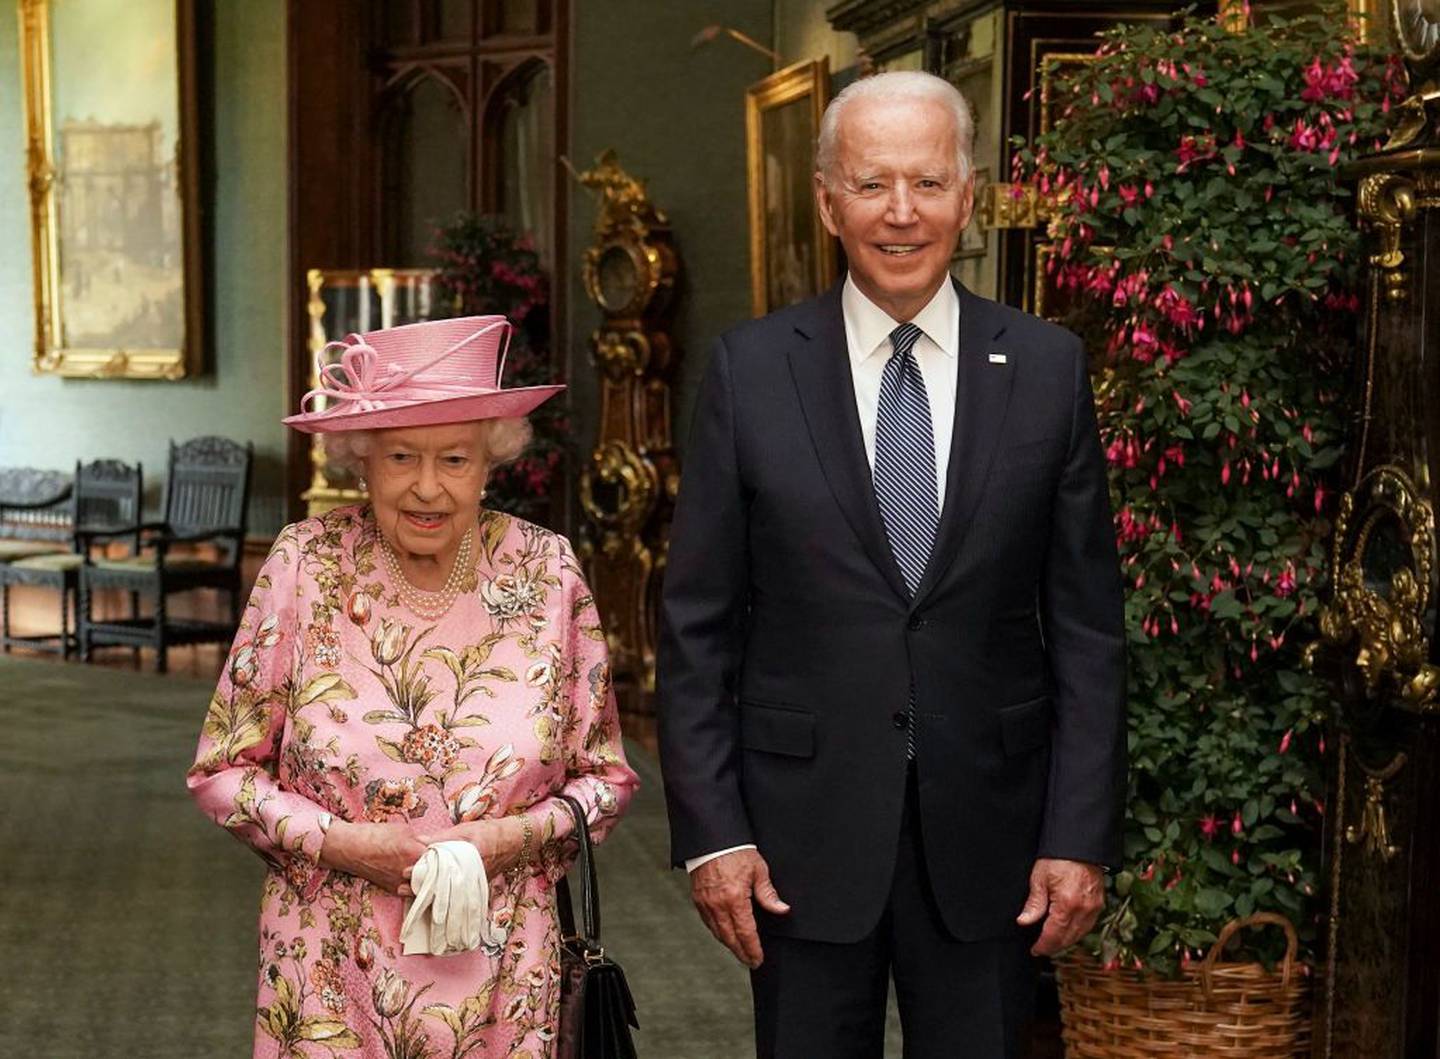 La Reina Isabel II con el Presidente de los Estados Unidos Joe Biden en el Gran Corredor durante su visita al Castillo de Windsor el 13 de junio de 2021 en Windsor, Inglaterra.